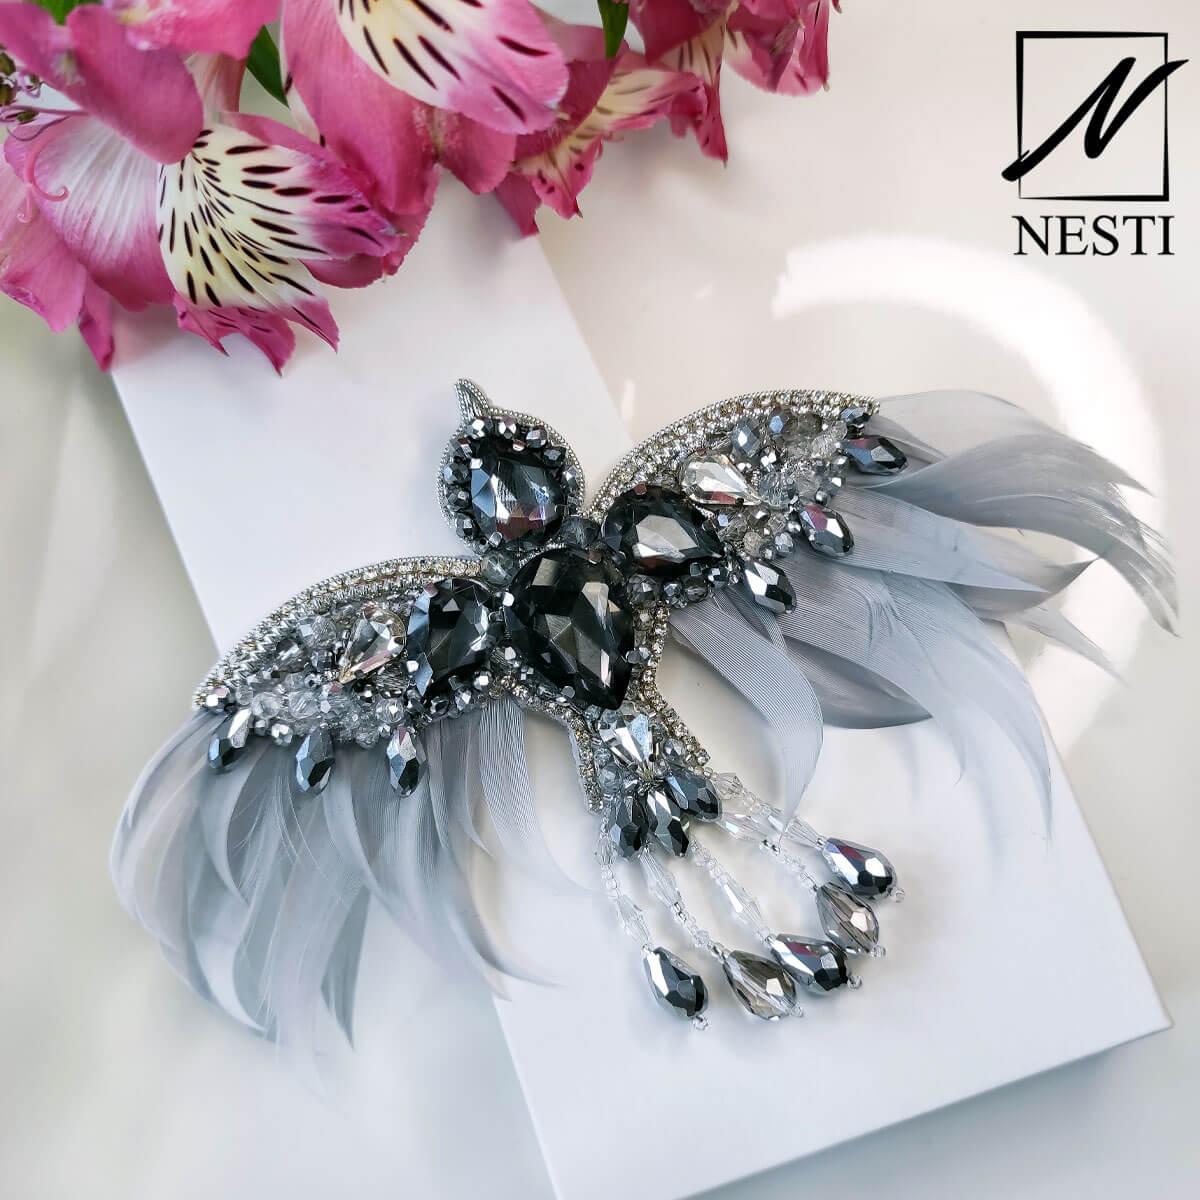 Брошь ручной работы Птица с перьями в сером цвете - Nesti